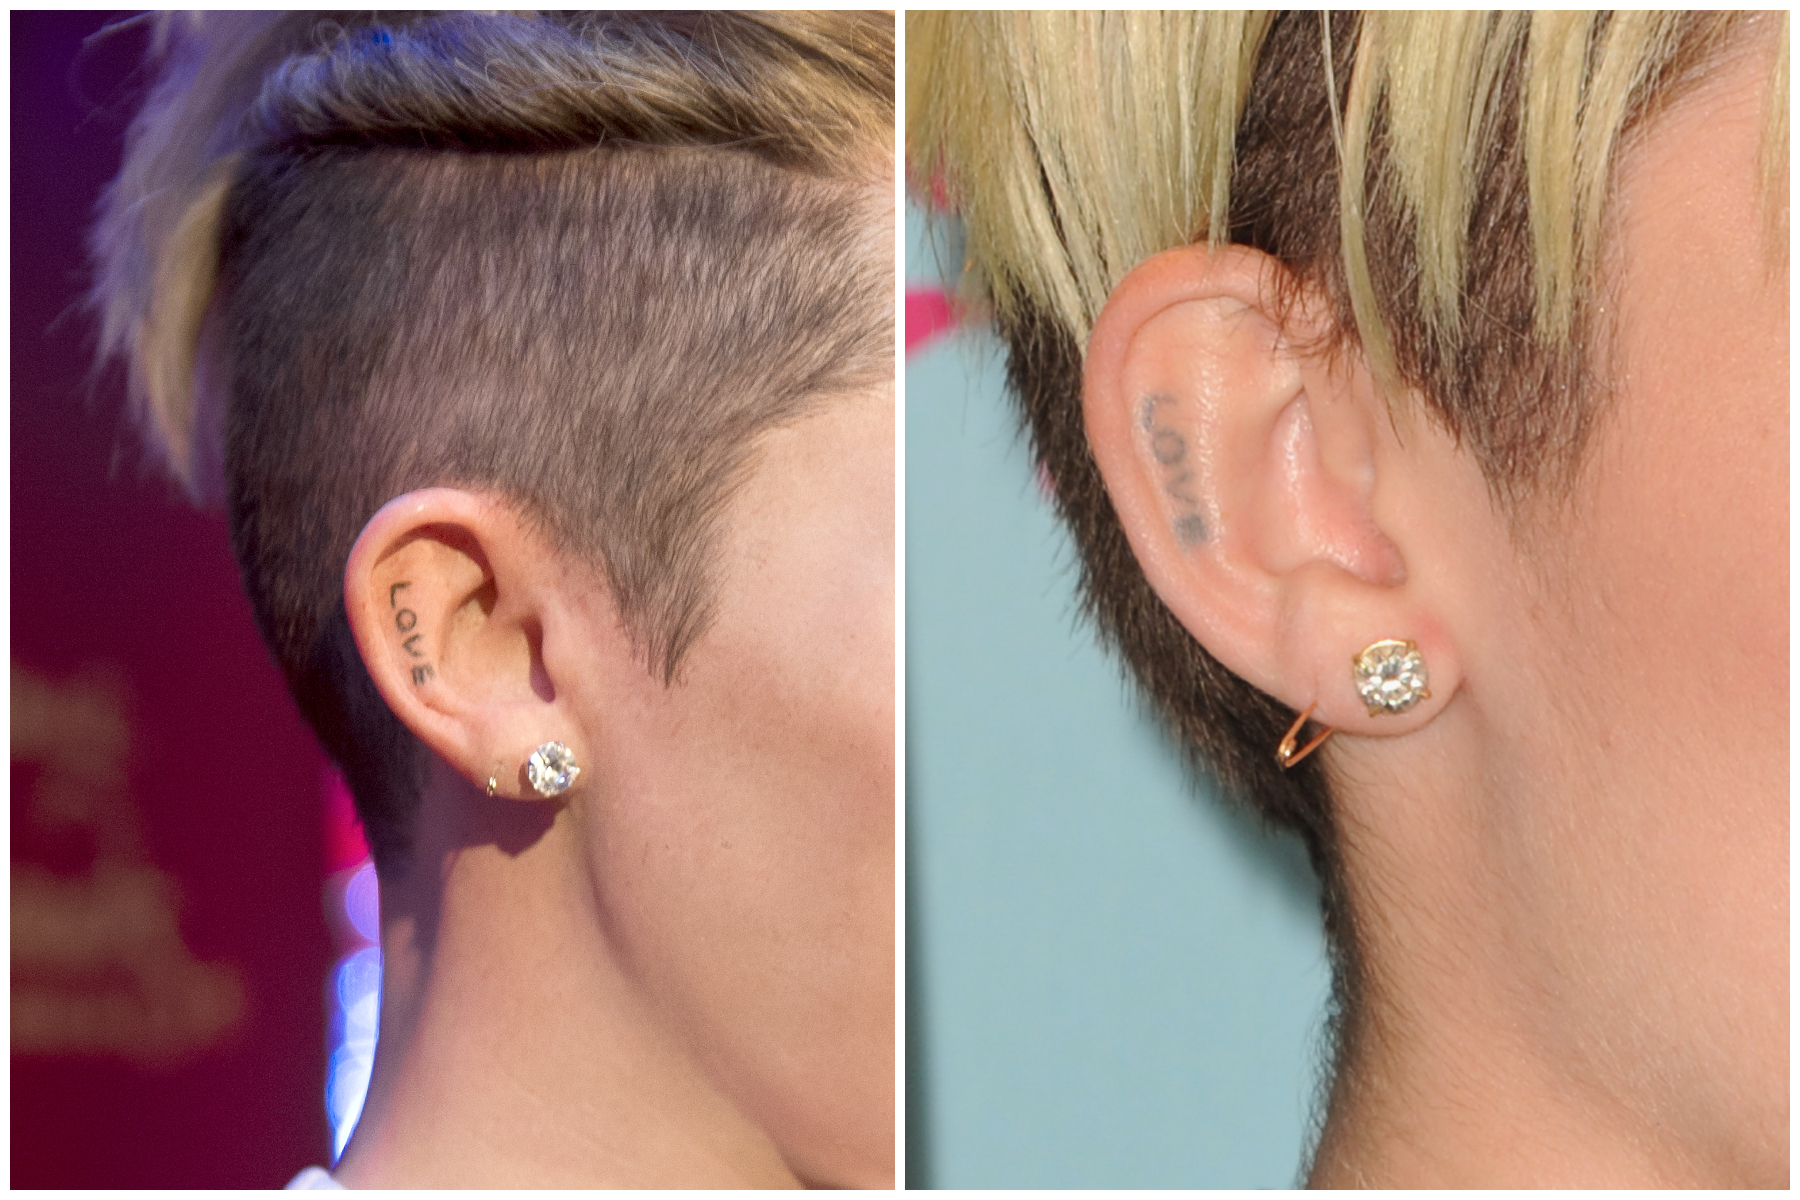 Miley Cyrus tattoos